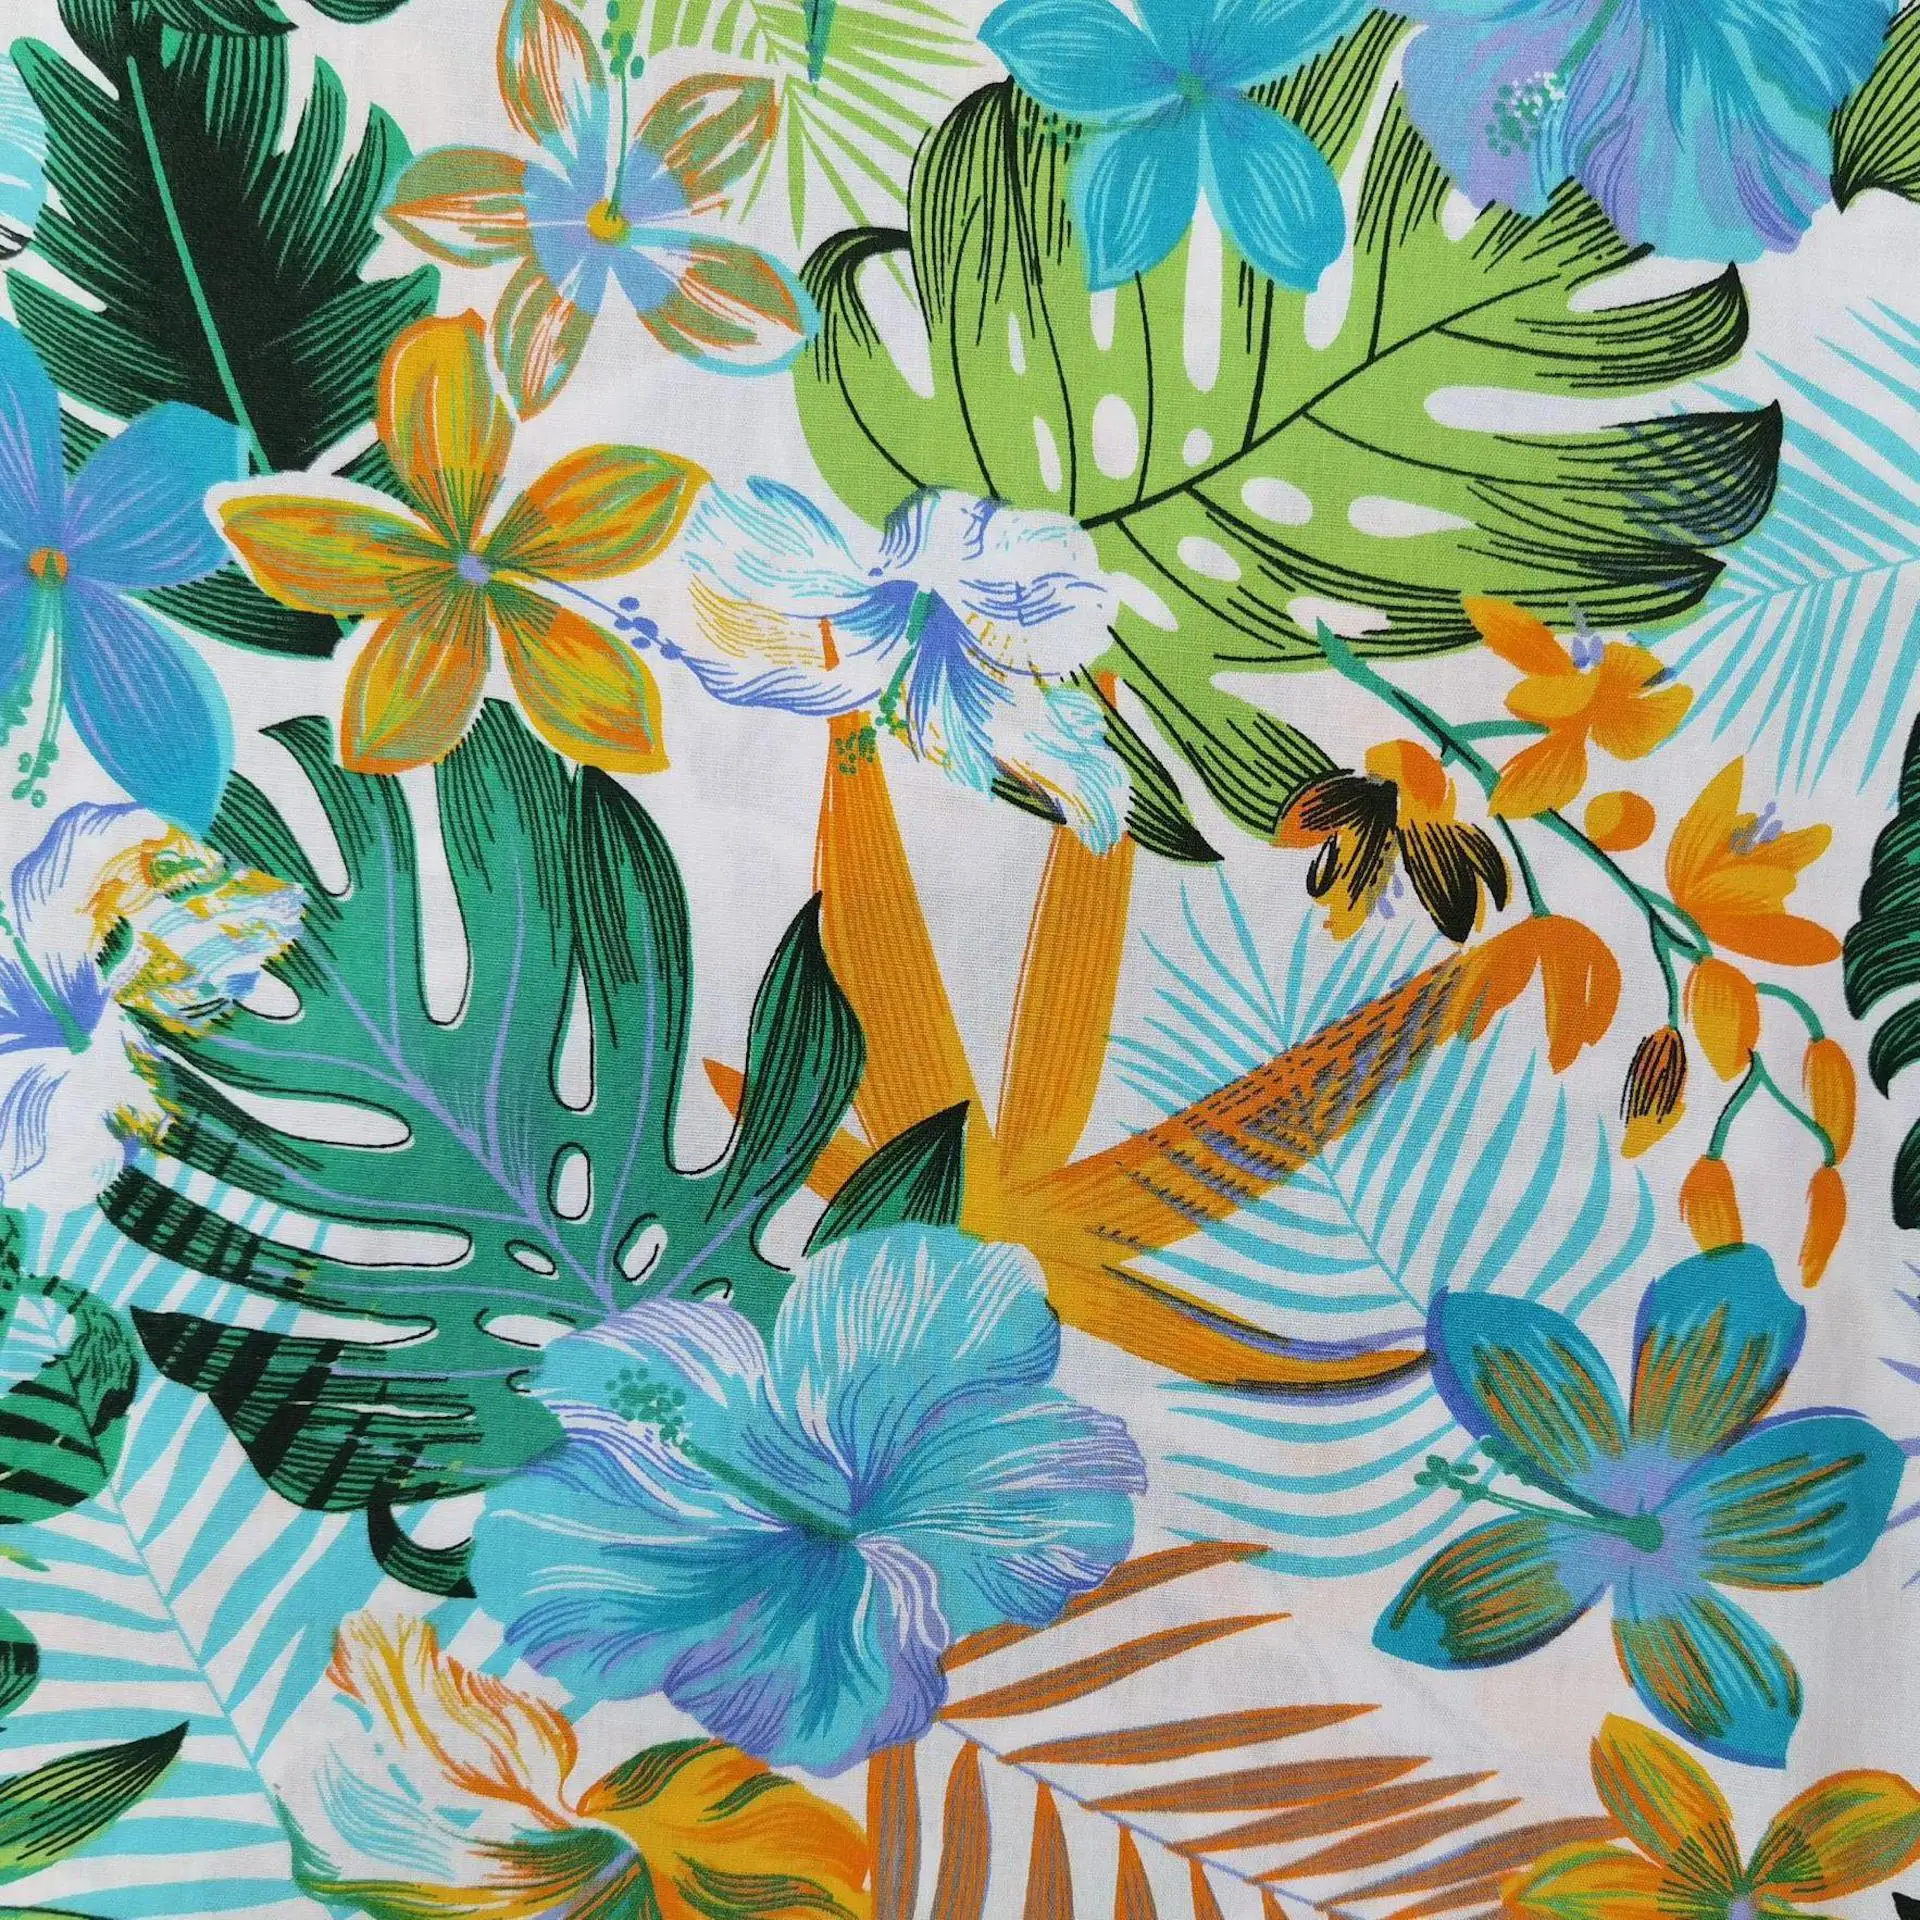 
Ткань хлопок поплин для постельных принадлежностей Печать Горячая Распродажа различные цвета Новые Гавайские тропические листья 100% хлопок рубашка чёсаные тканые 148 см 